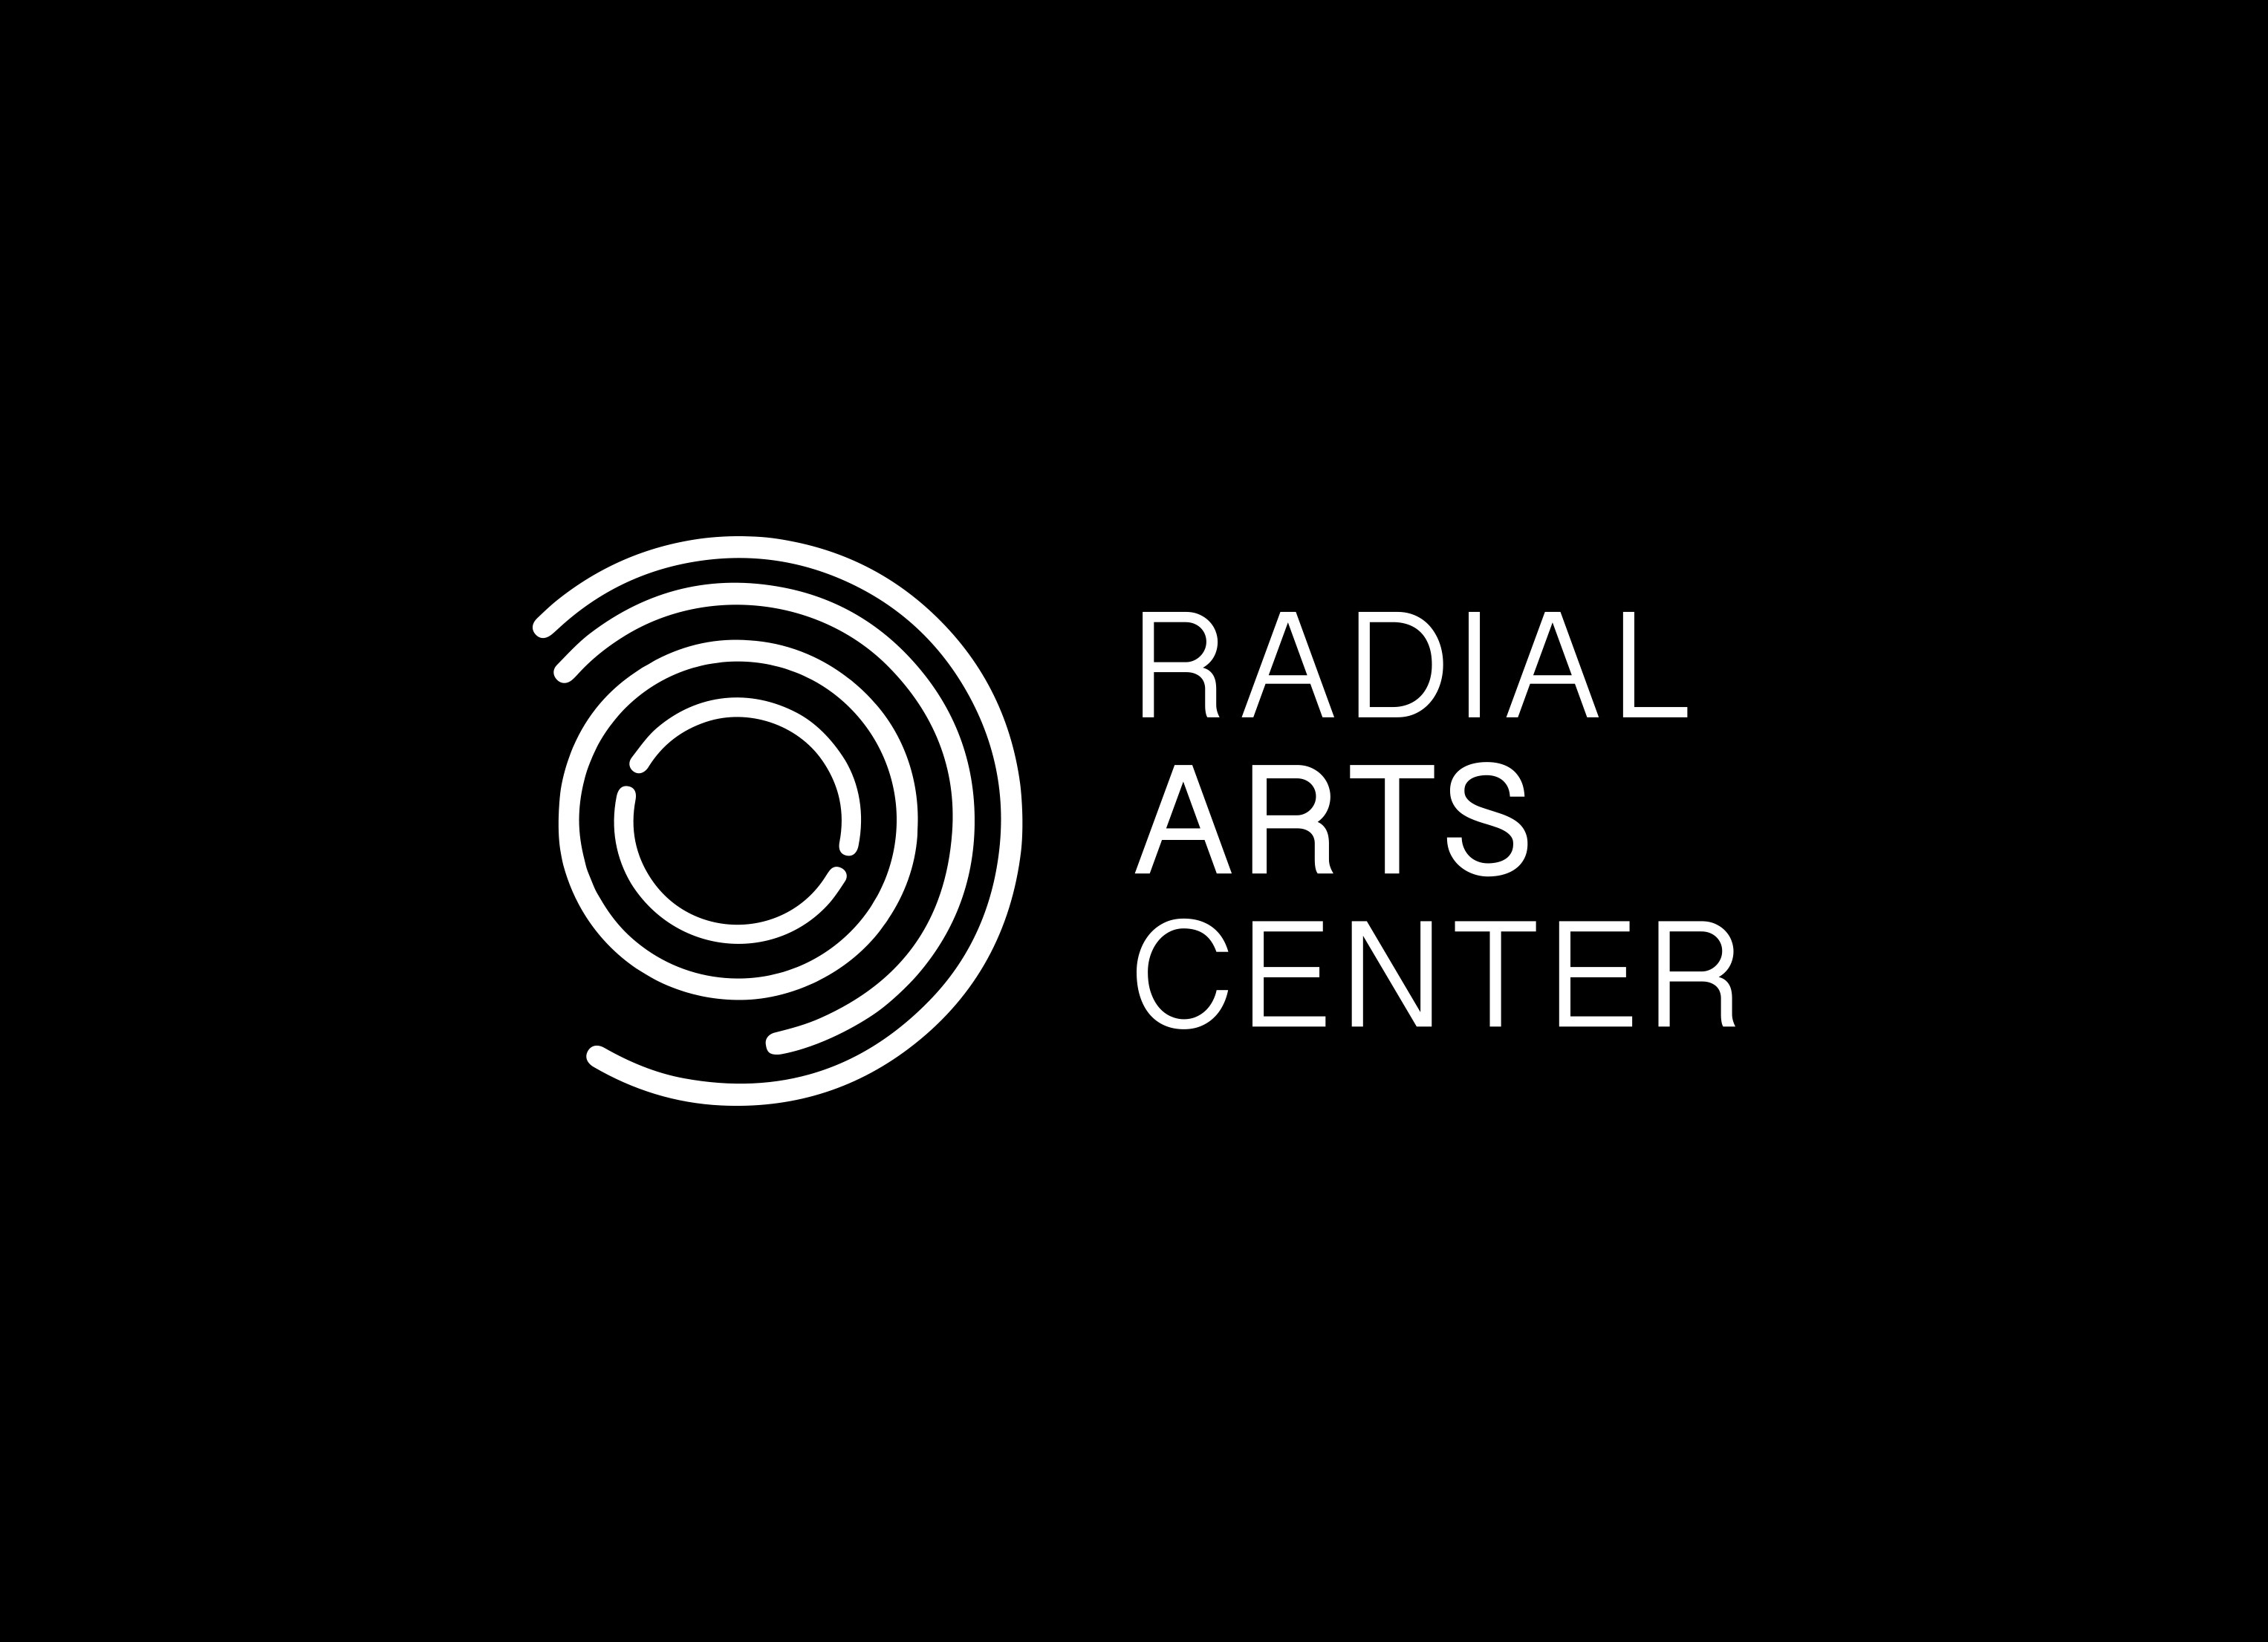 Radial Arts Center